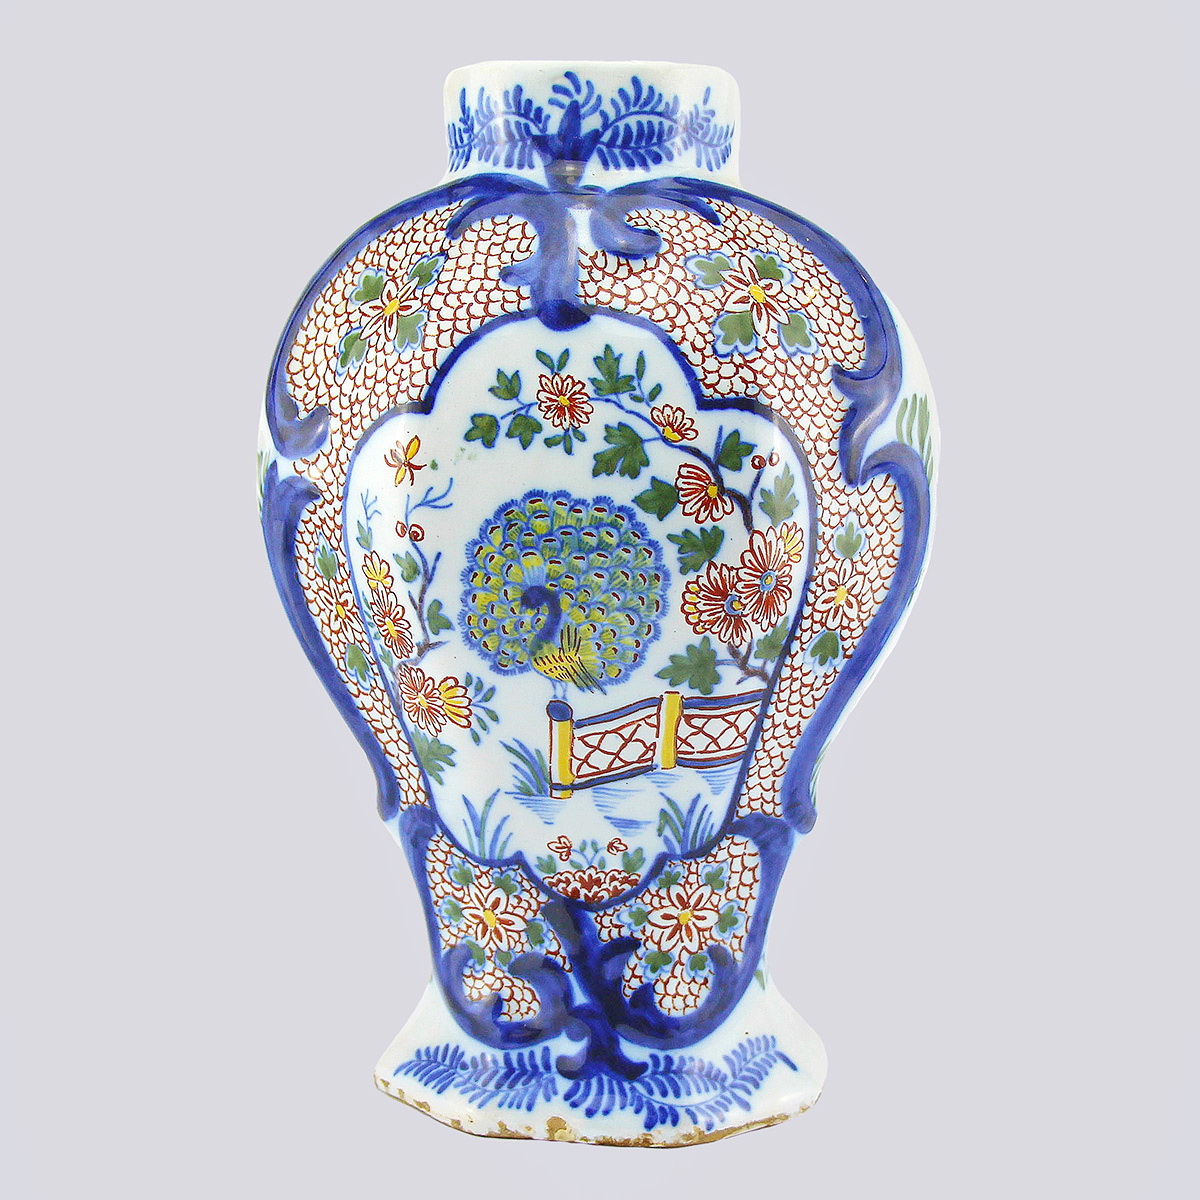 Керамическая ваза «Павлин» с росписью (Голландия, Фирма Дельф, 18 век)